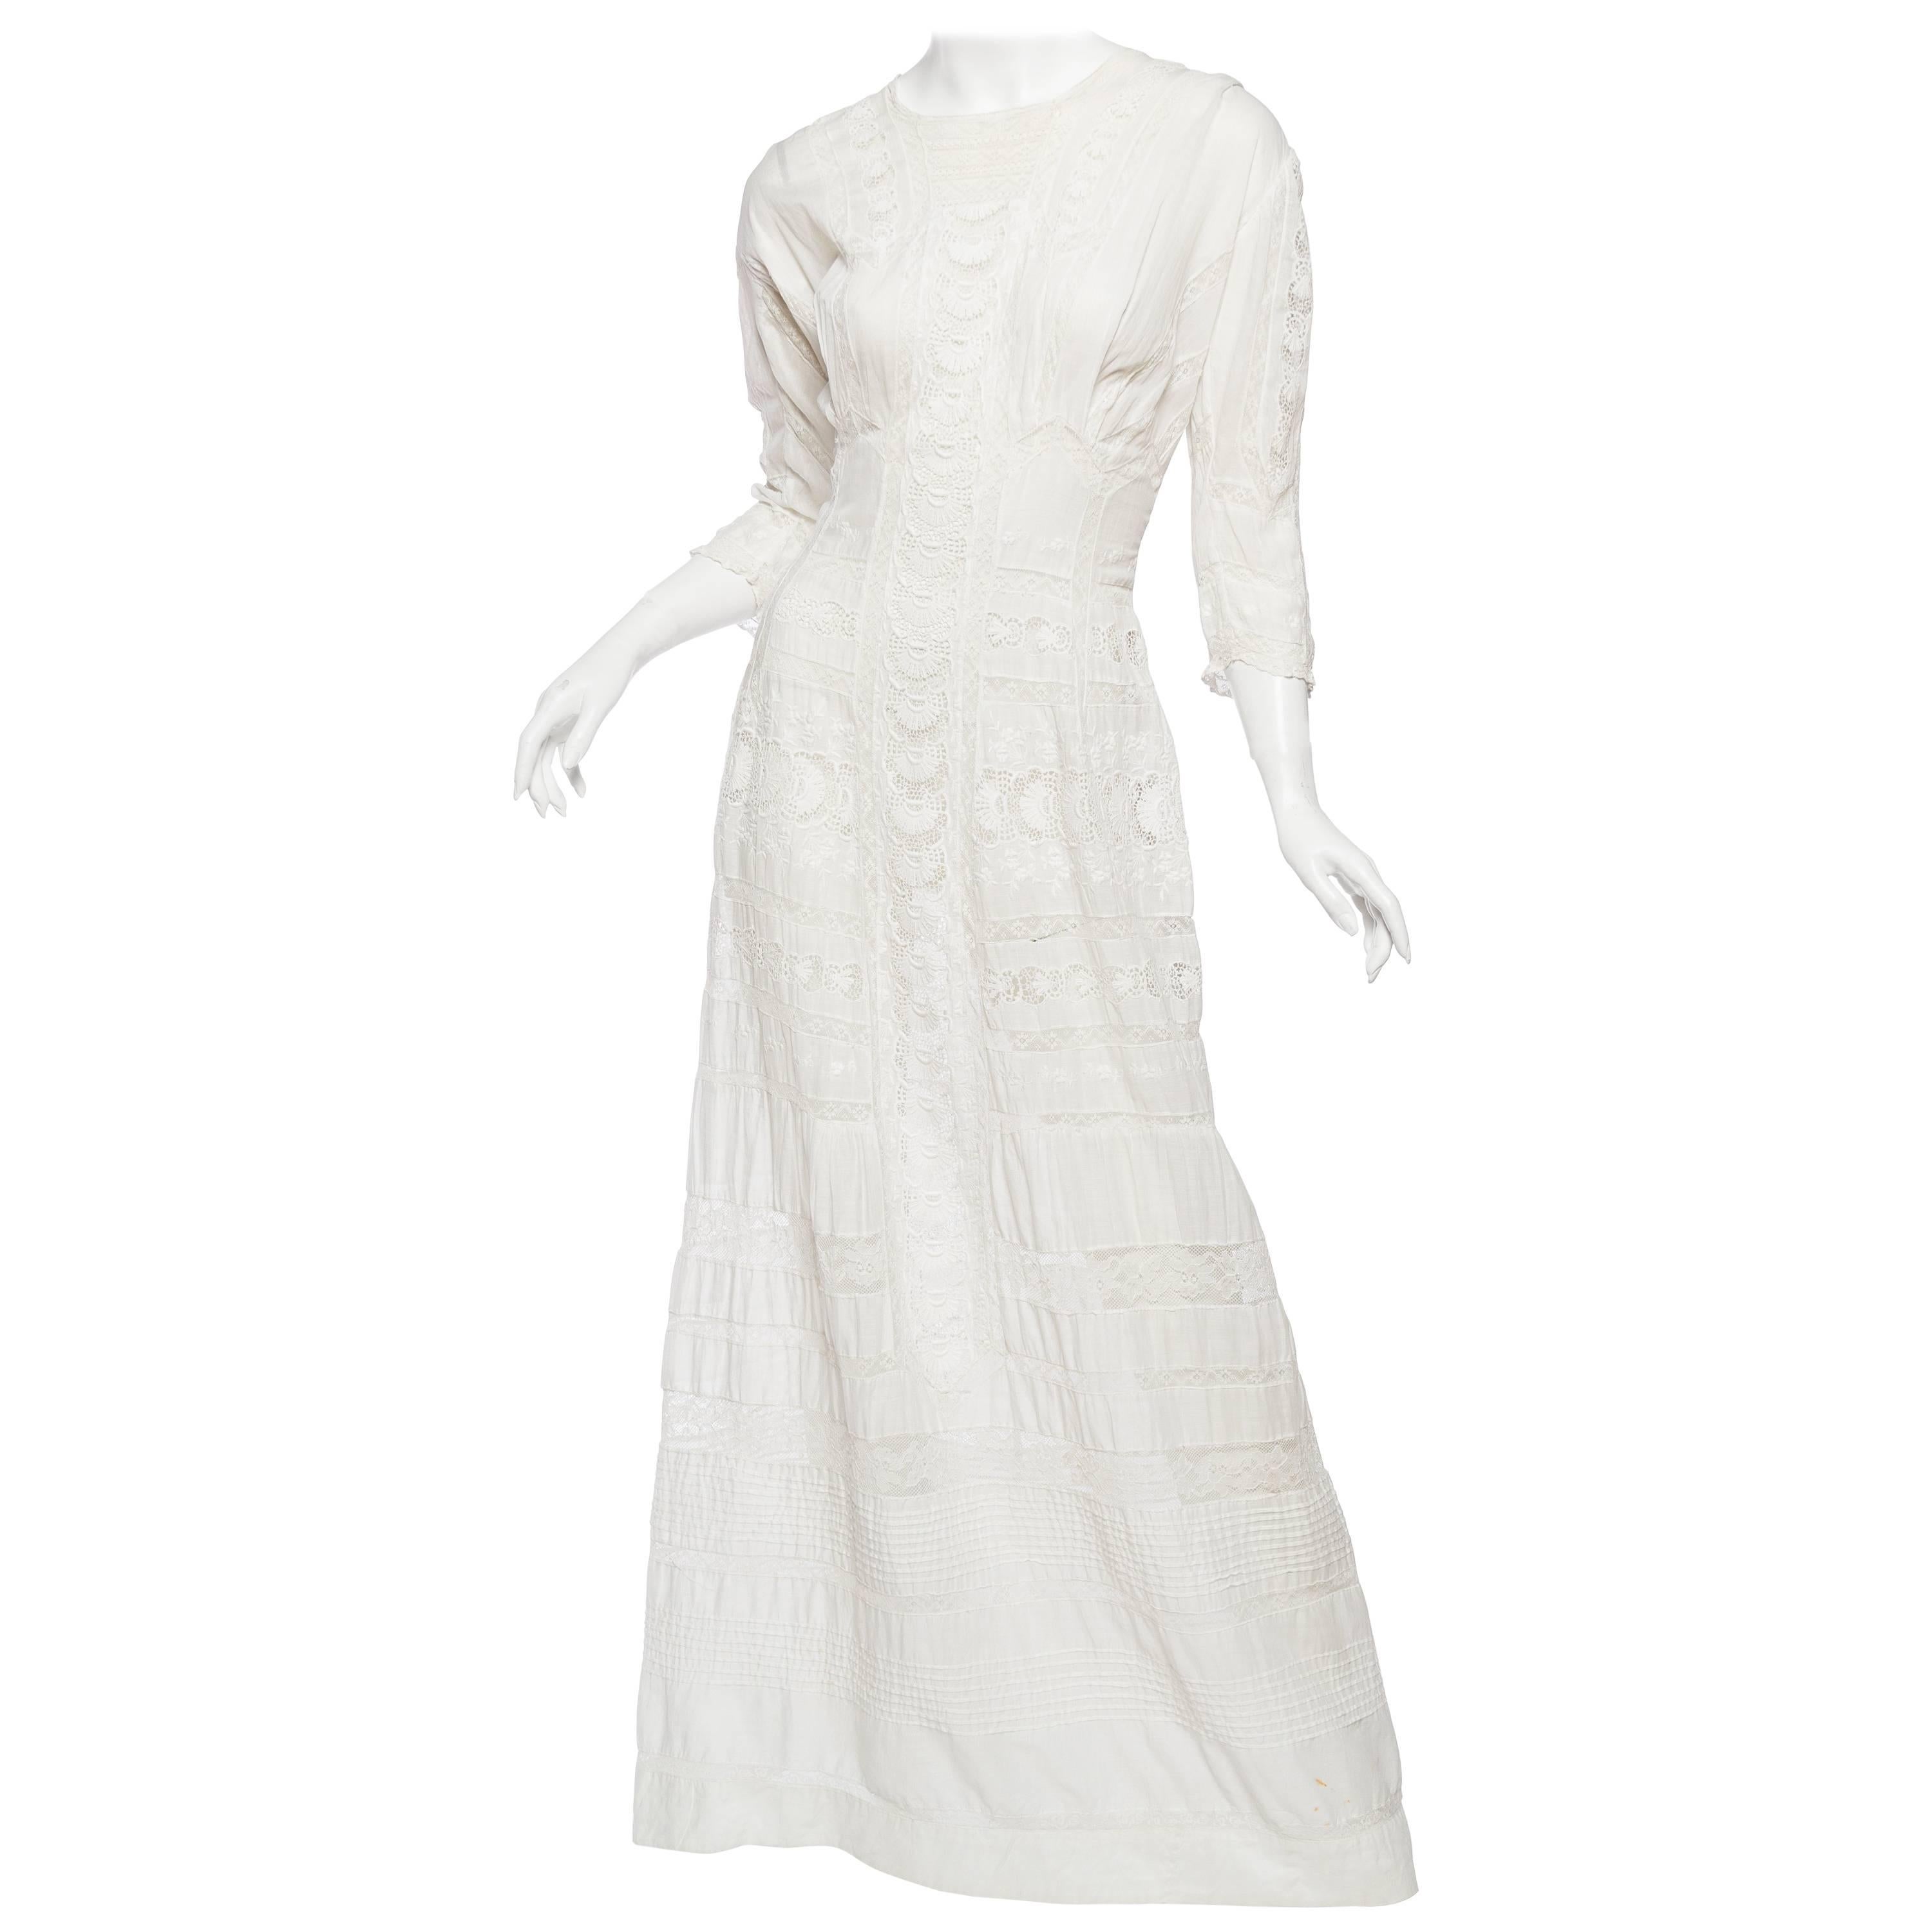 Antique Cotton and Lace Edwardian Tea Dress